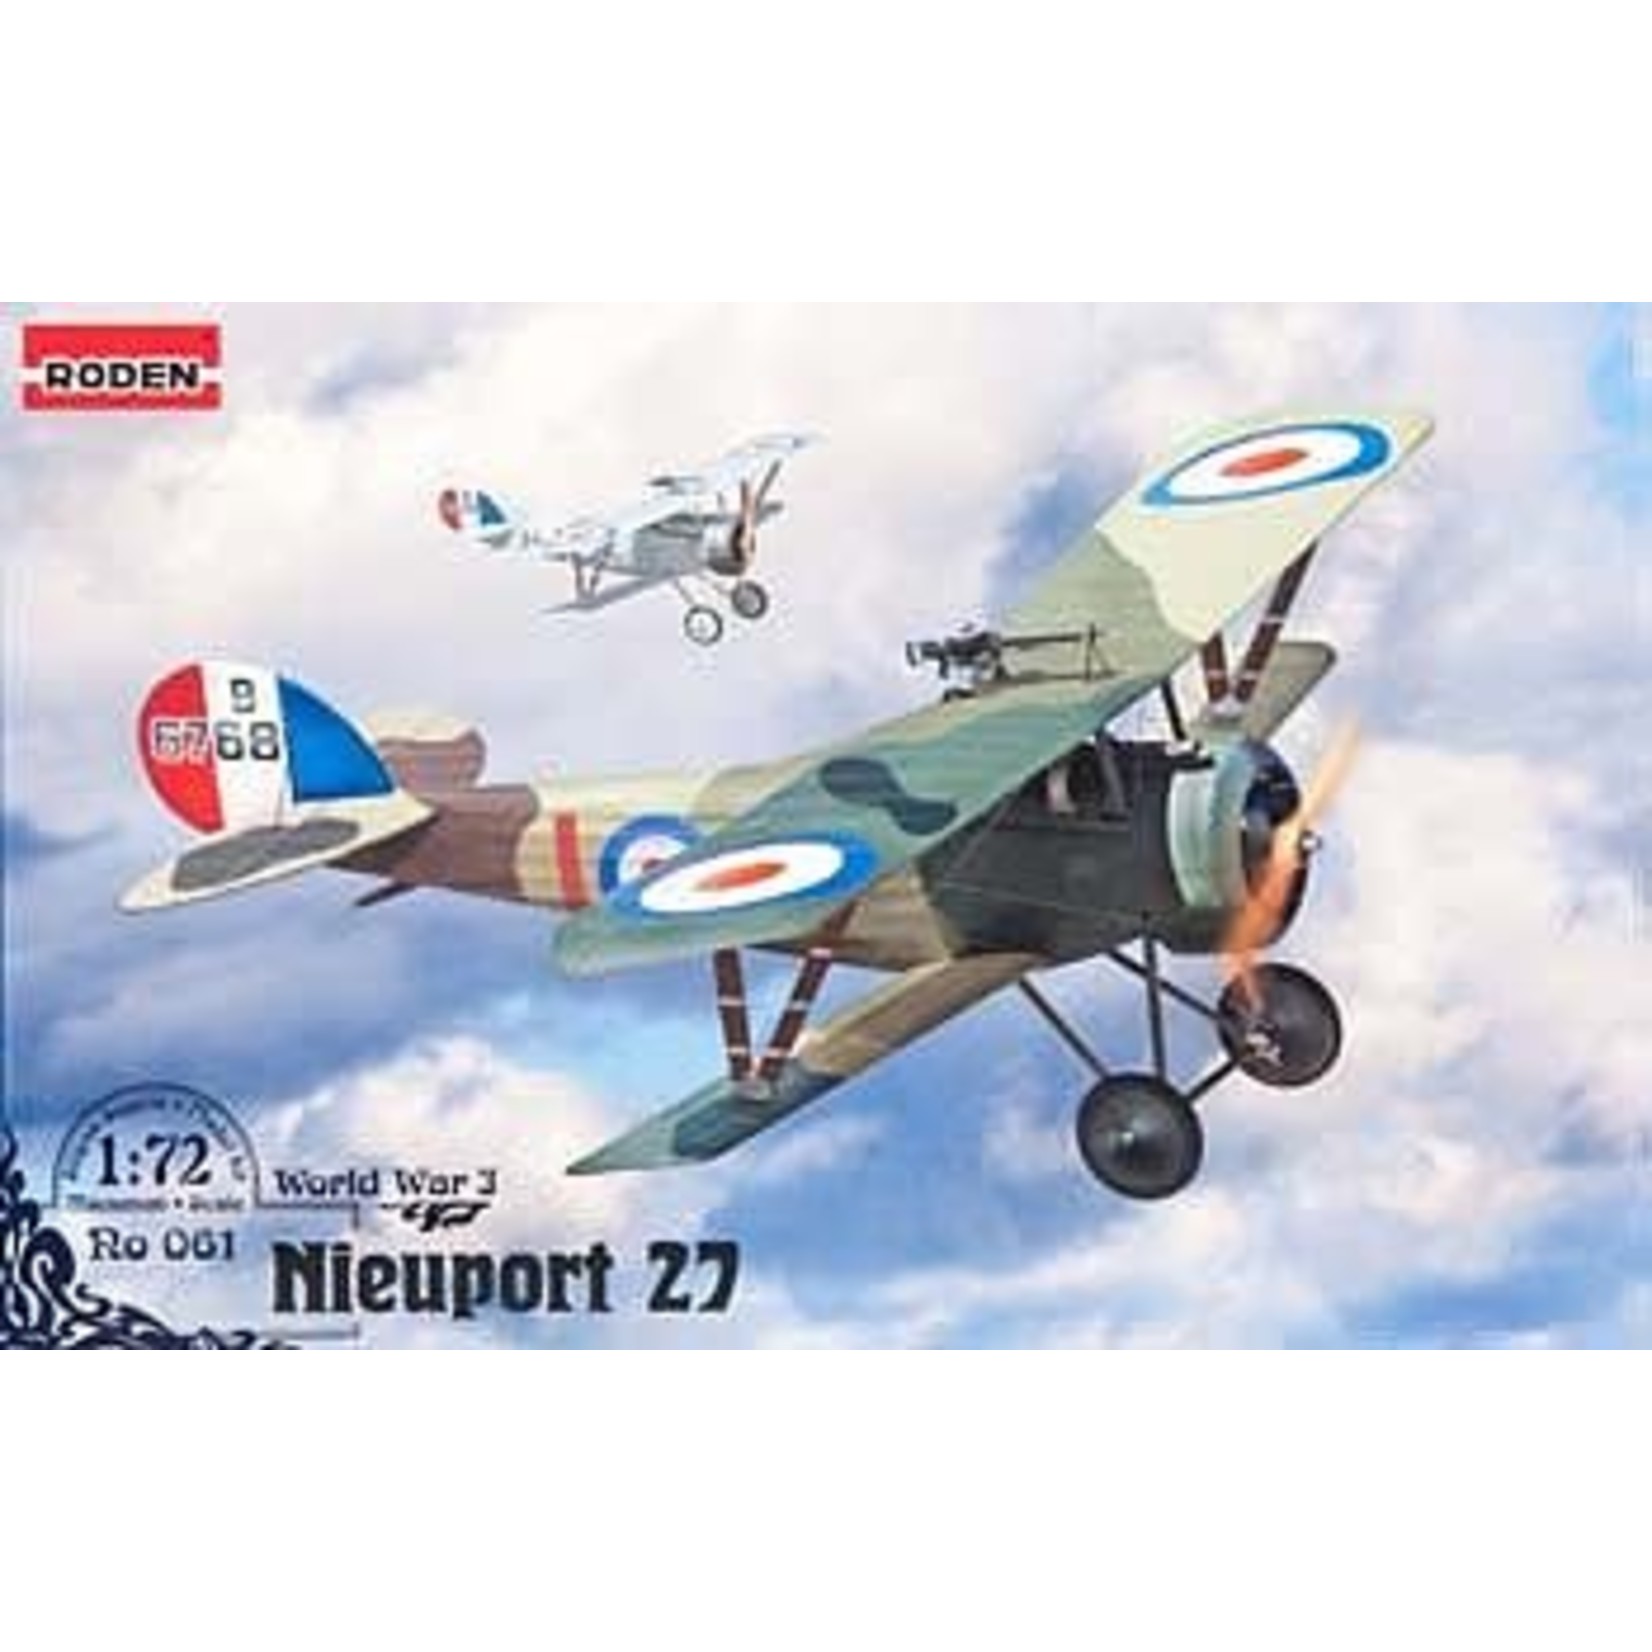 0061: Nieuport 27